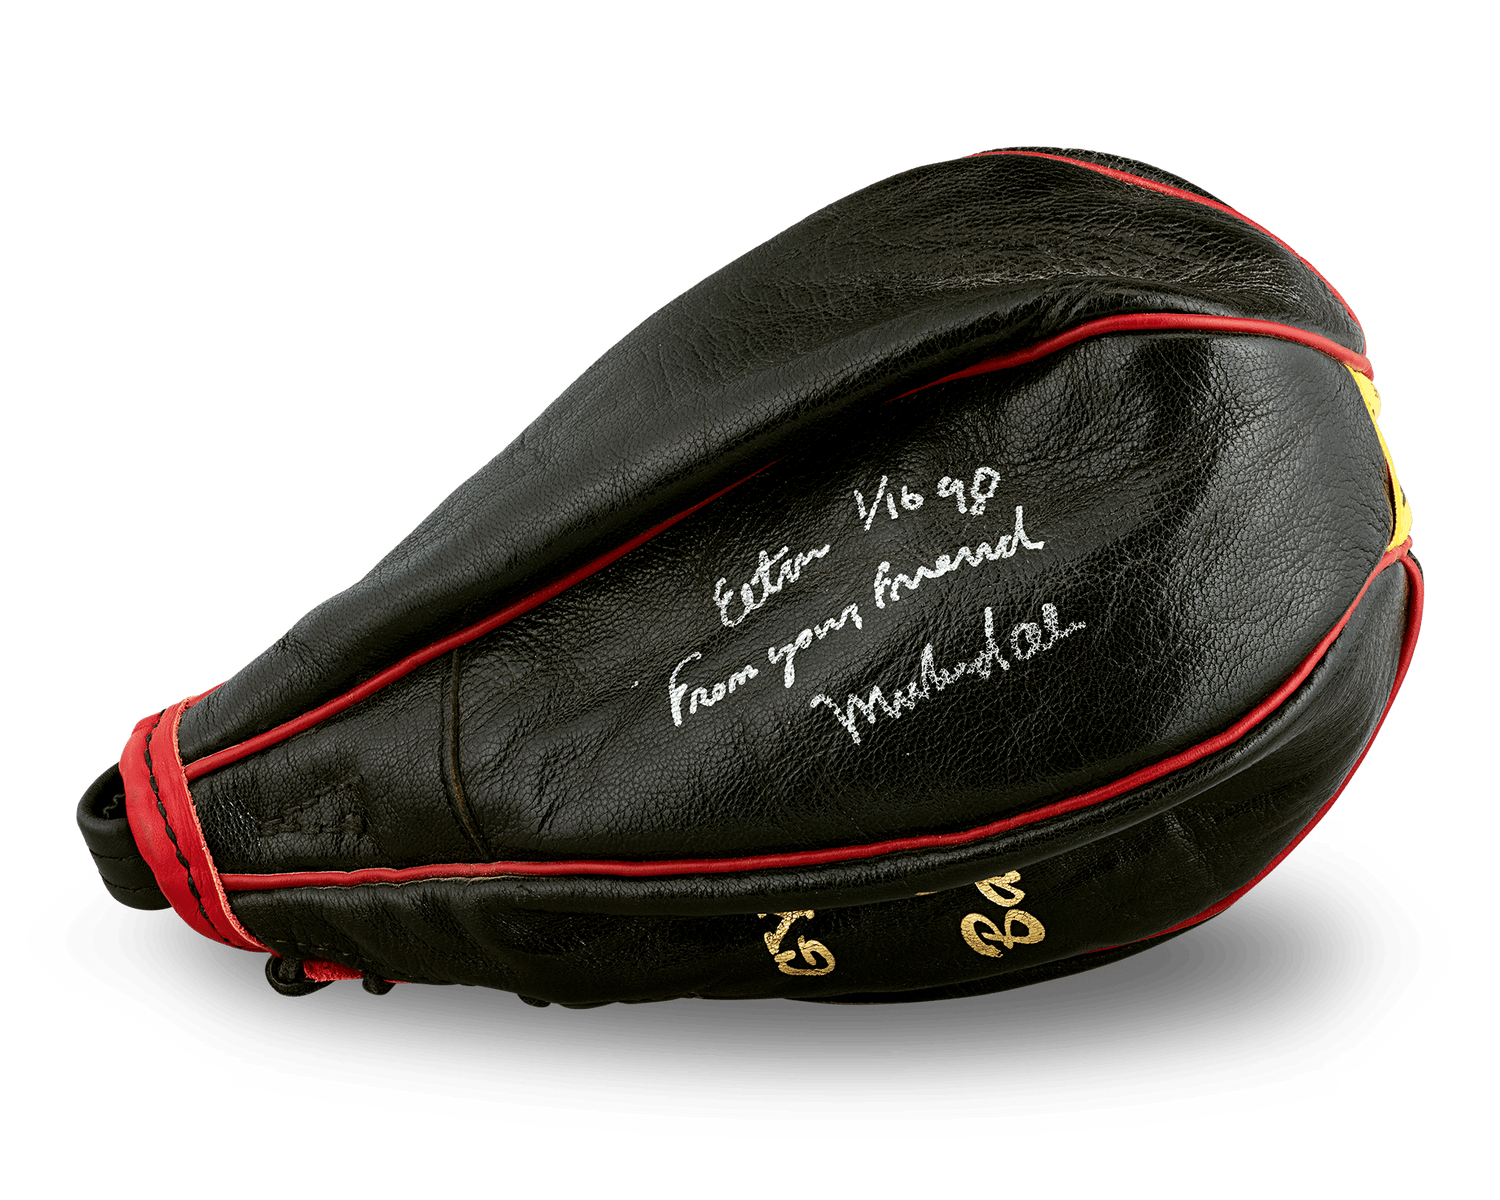 Muhammad Ali Signed Punching Bag, Gift to Sir Elton John